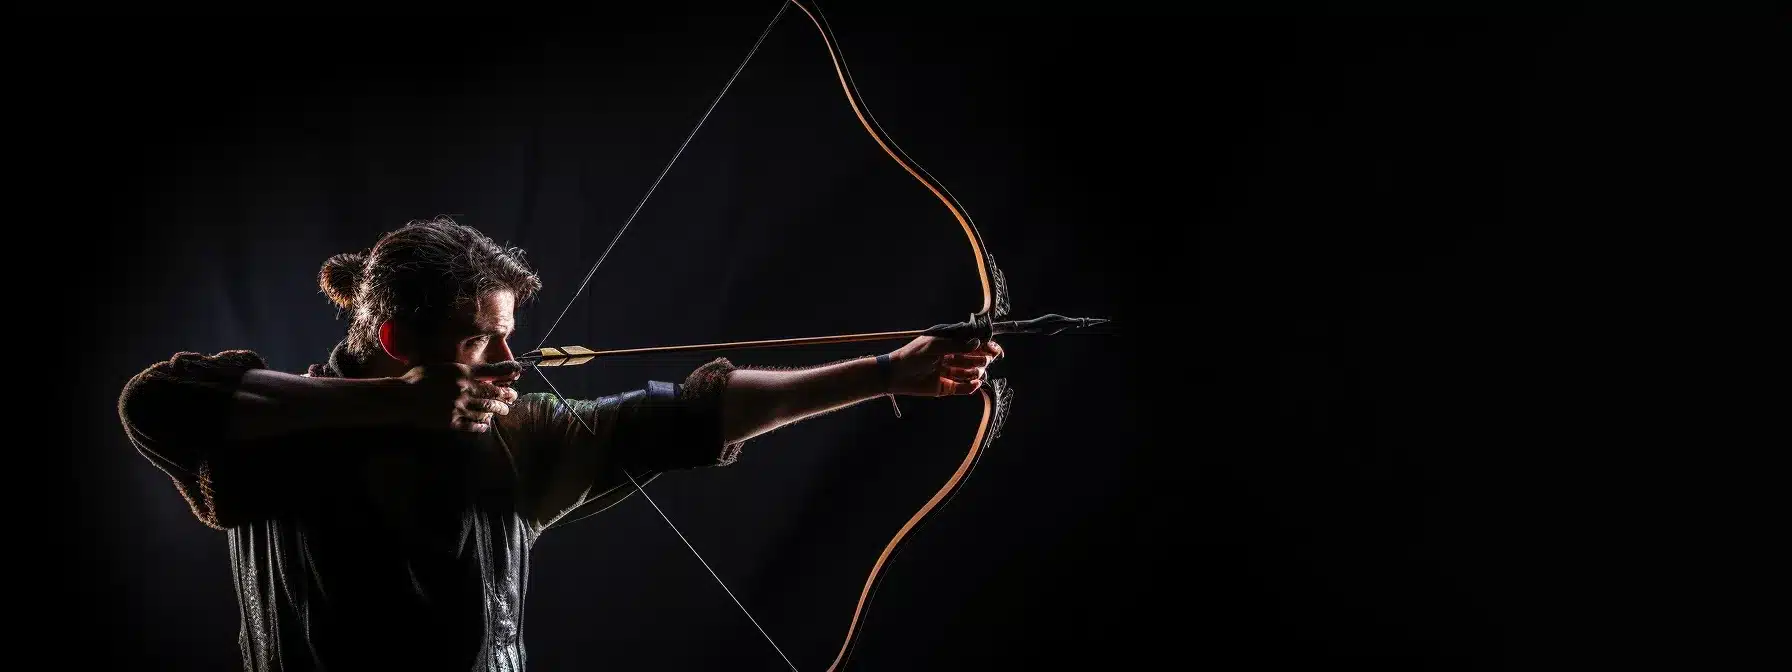 An Archer Aiming At A Bullseye With A Bow And Arrow.